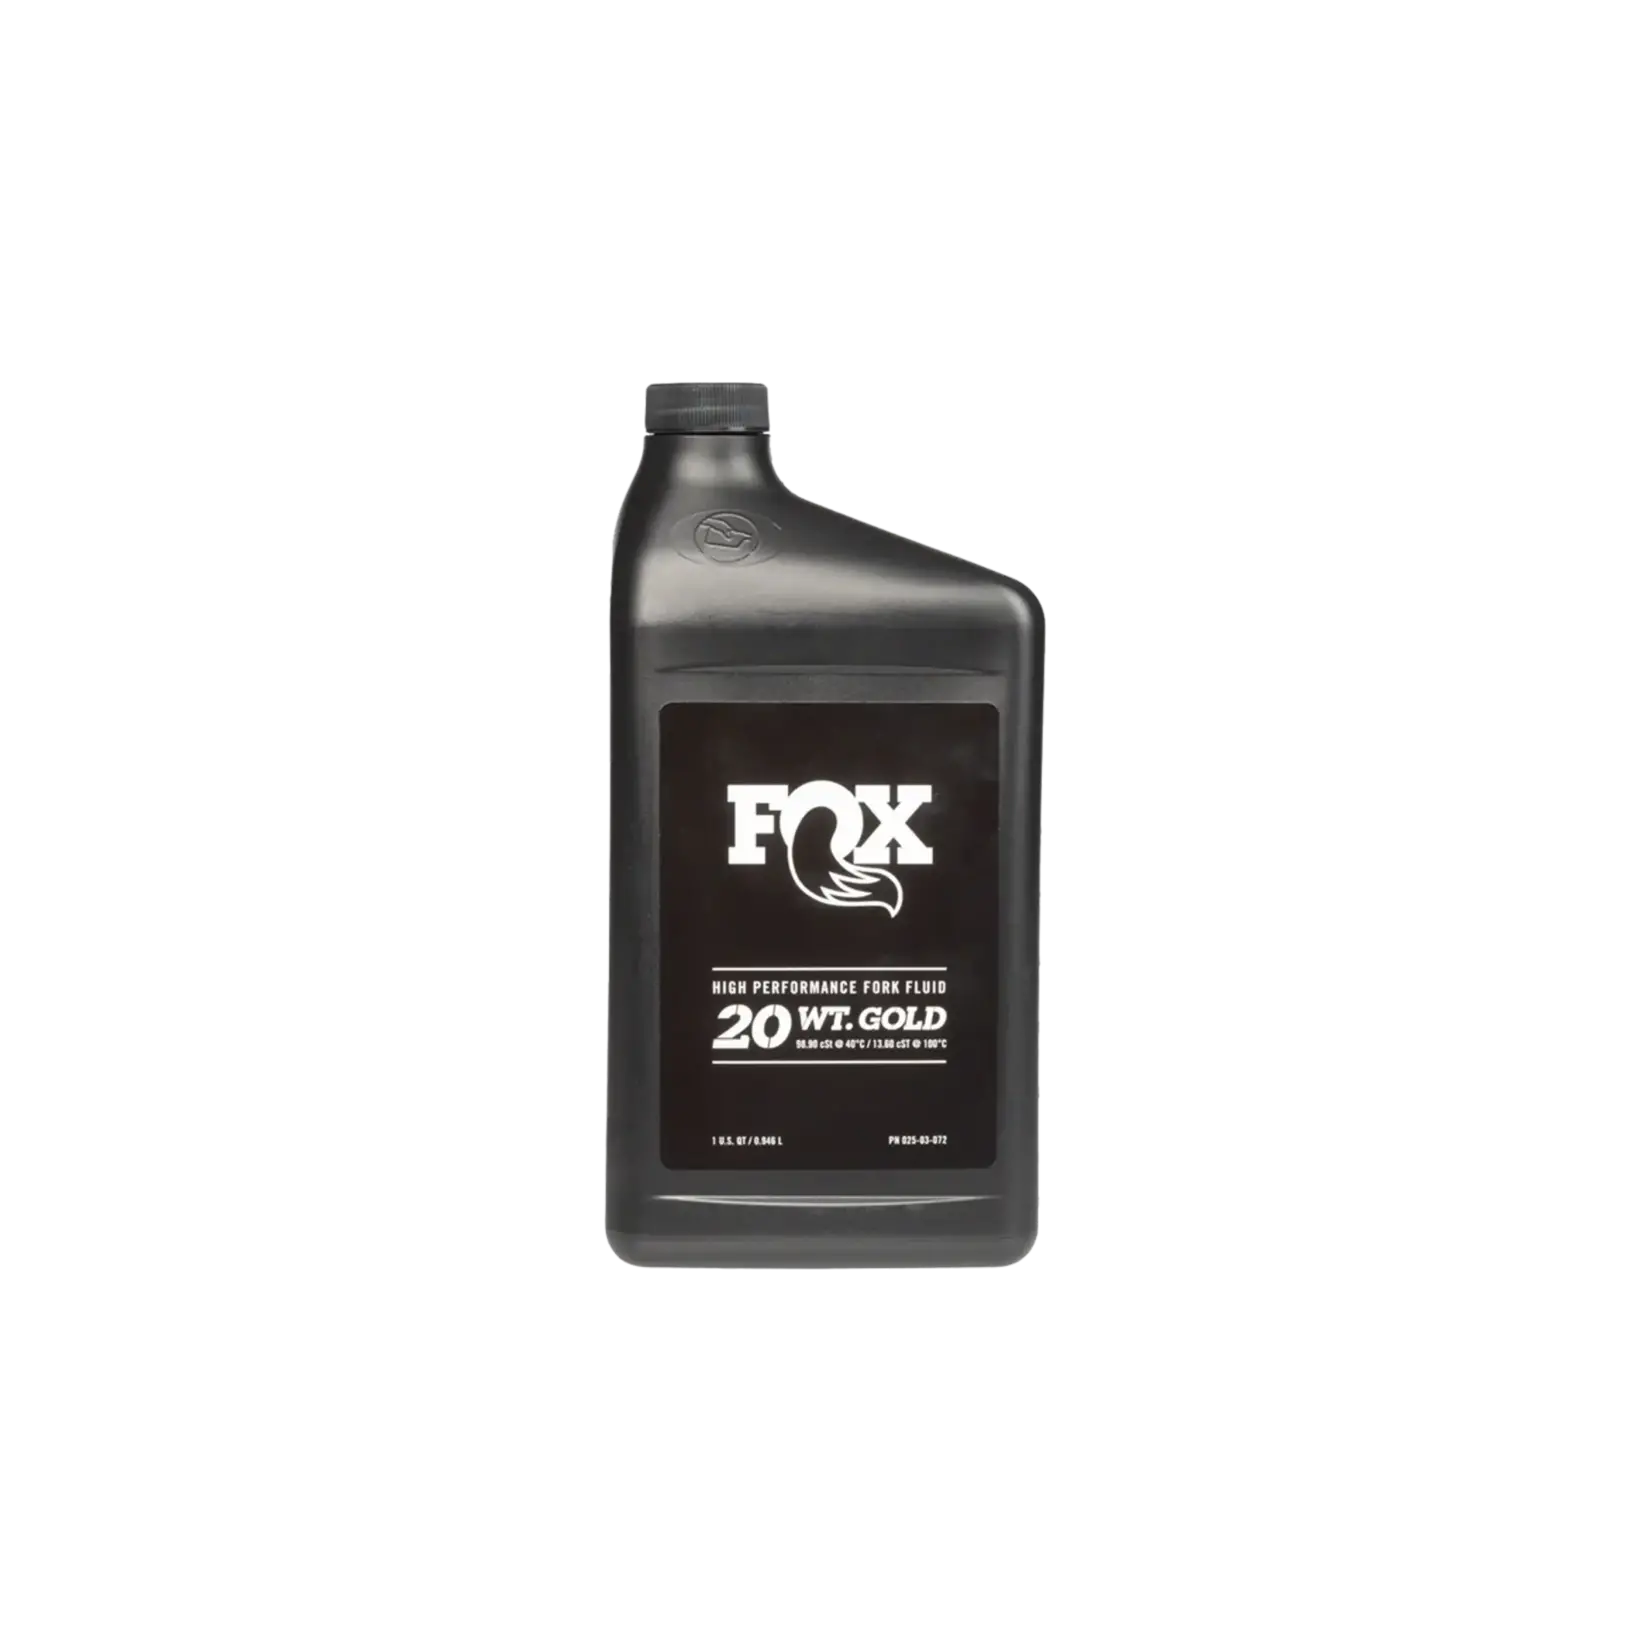 FOX Oil: AM, FOX 20 WT Gold, T22238, 32 oz